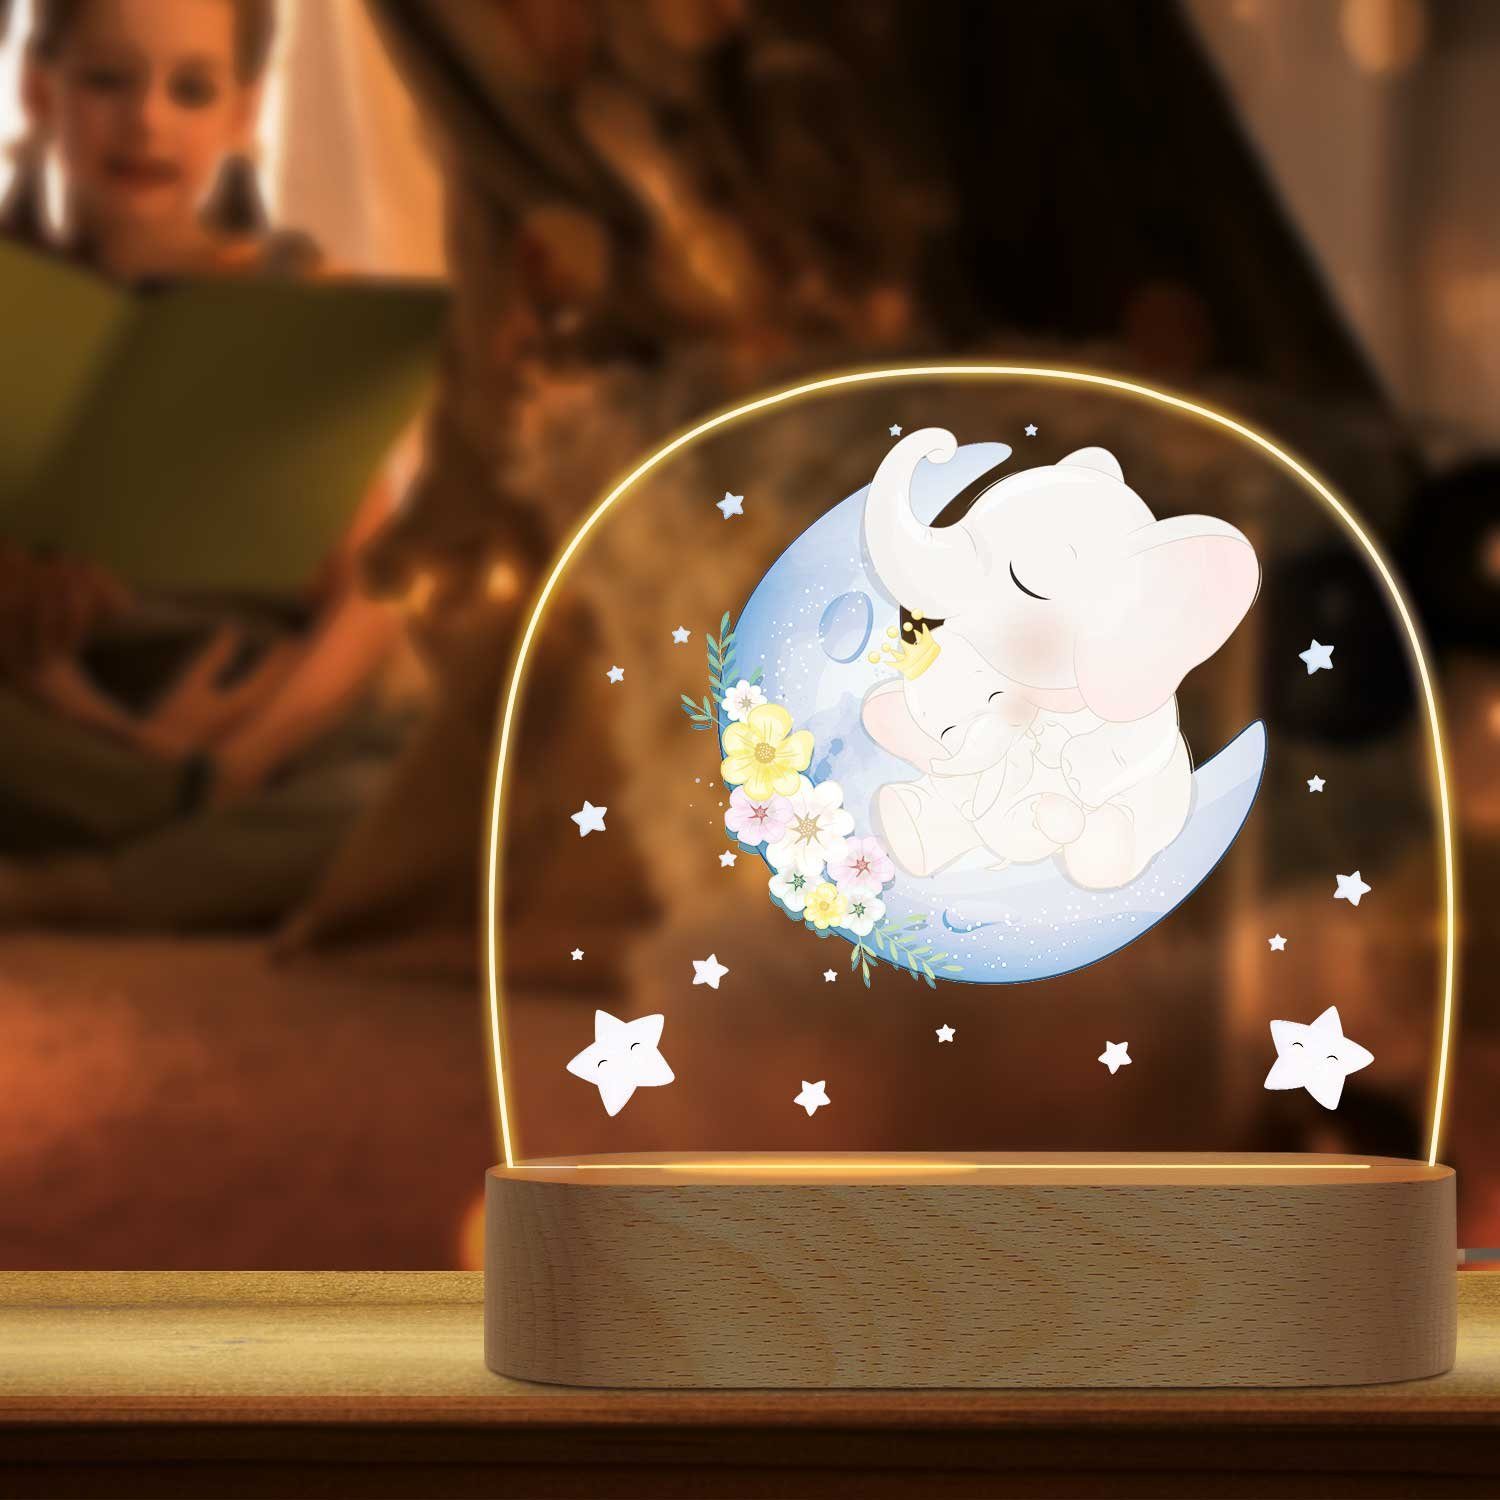 GRAVURZEILE LED Nachtlicht für Kinder, Beruhigend und Energiesparend - Mond Design - Elefant, LED, Warmweiß, Geschenk für Kinder & Baby